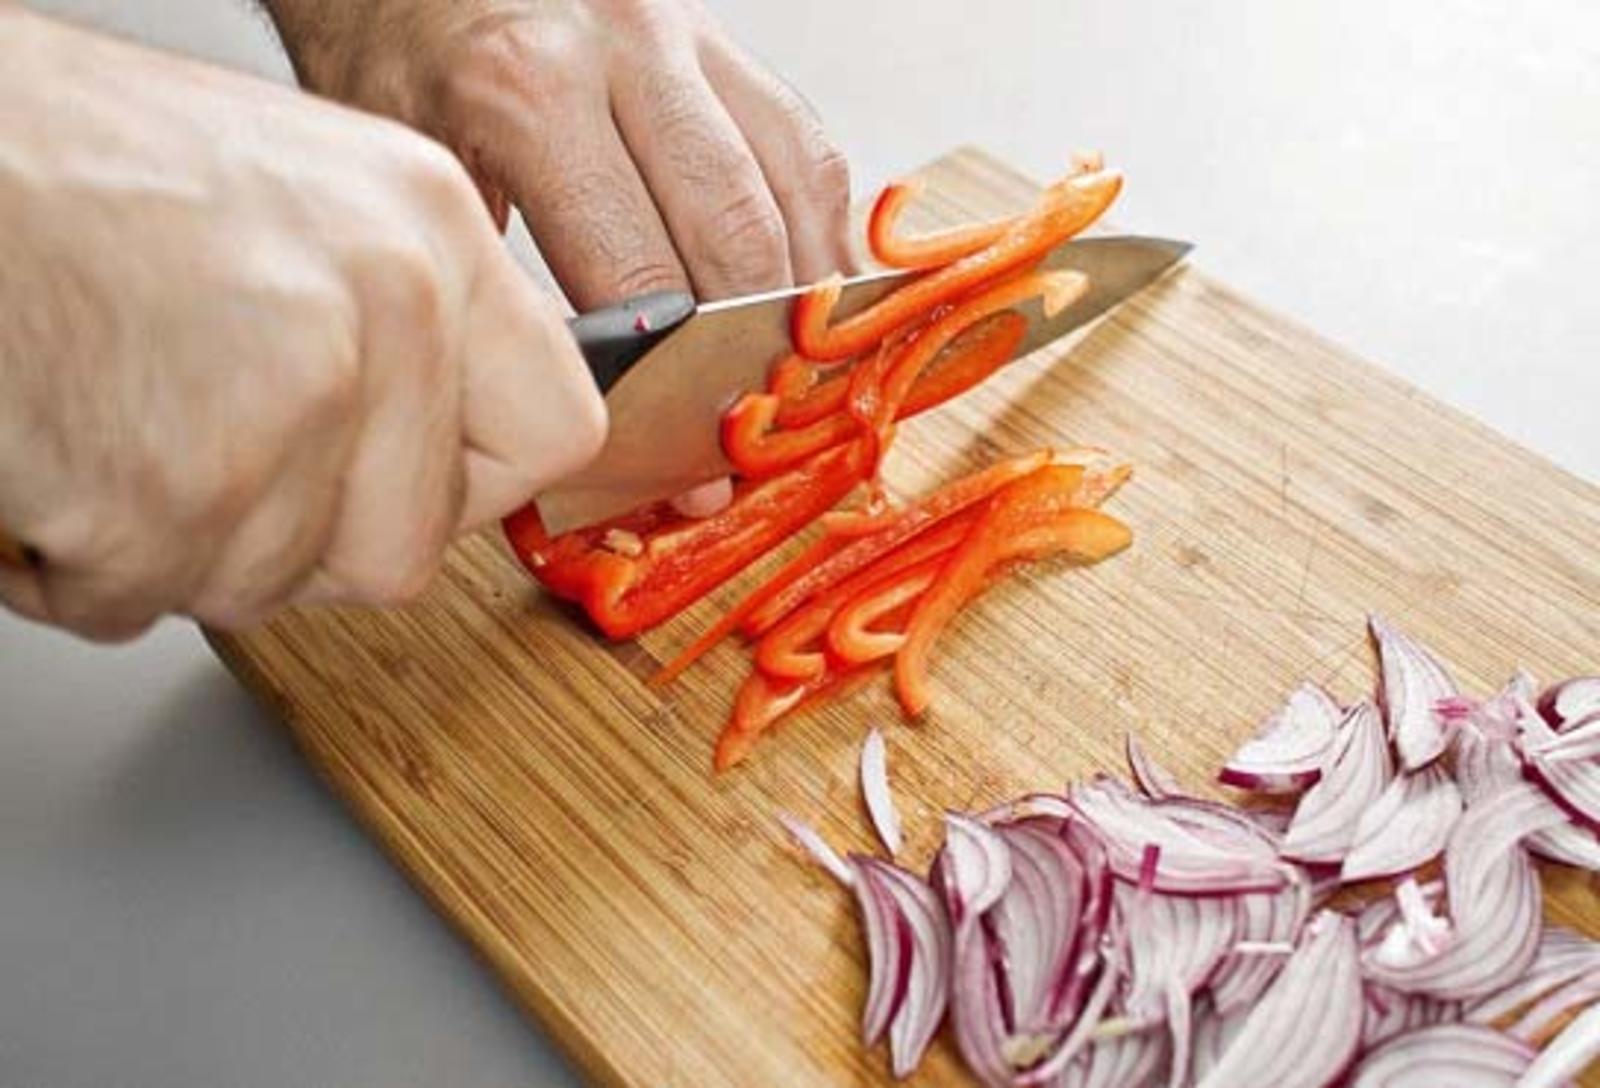 Нарезка овощей соломкой. Нарезка вырезки соломкой. Как нарезать перец соломкой. Курица нарезанная соломкой приготовленная. Как порезать перец соломкой.